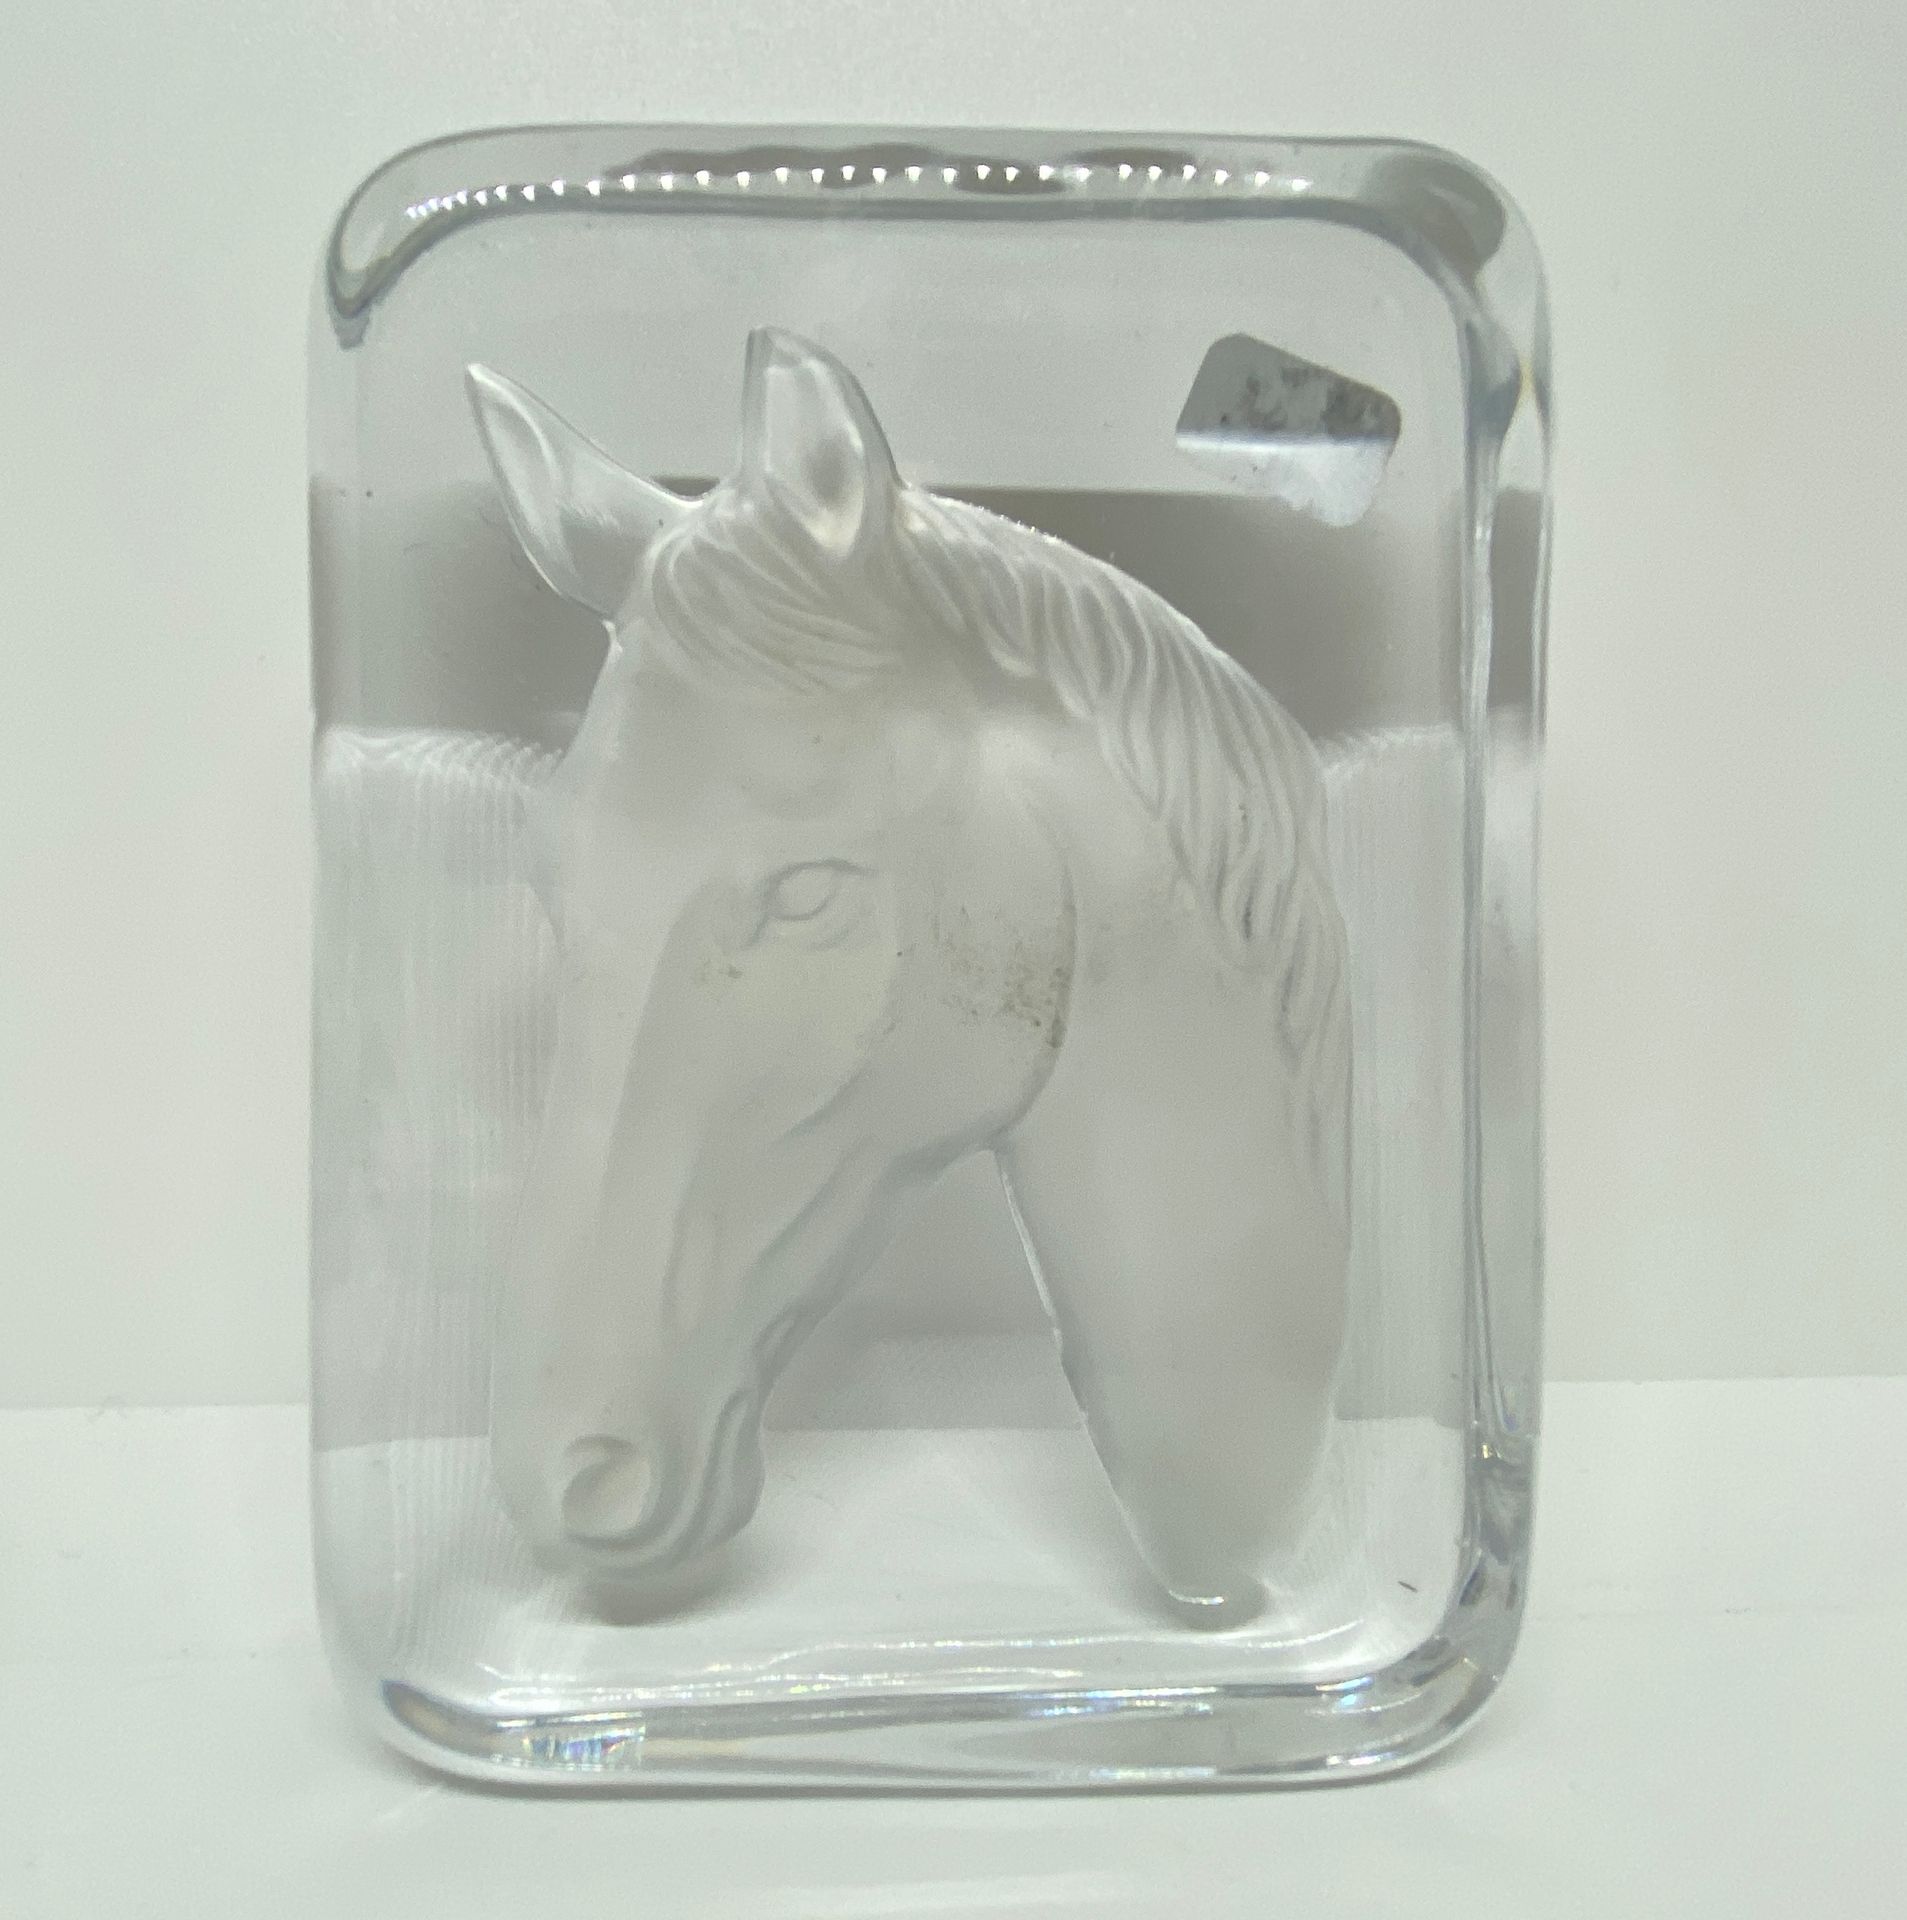 Null Papierpresse aus Kristallglas, die einen Pferdekopf in Relief darstellt.